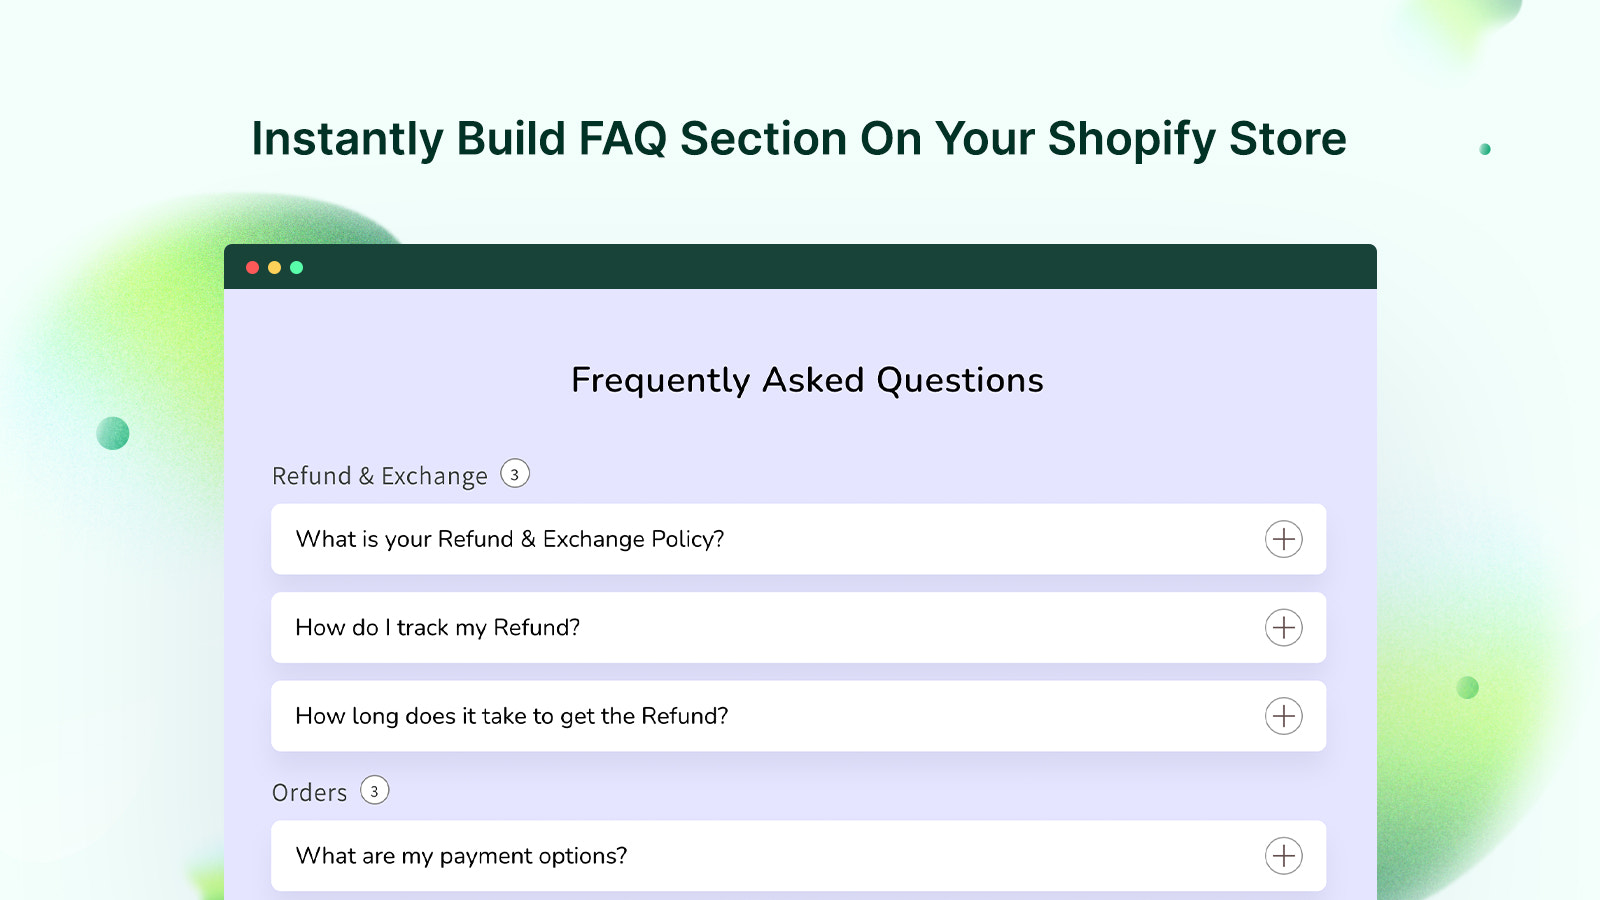 Byg øjeblikkeligt FAQ-sektion på din Shopify-butik